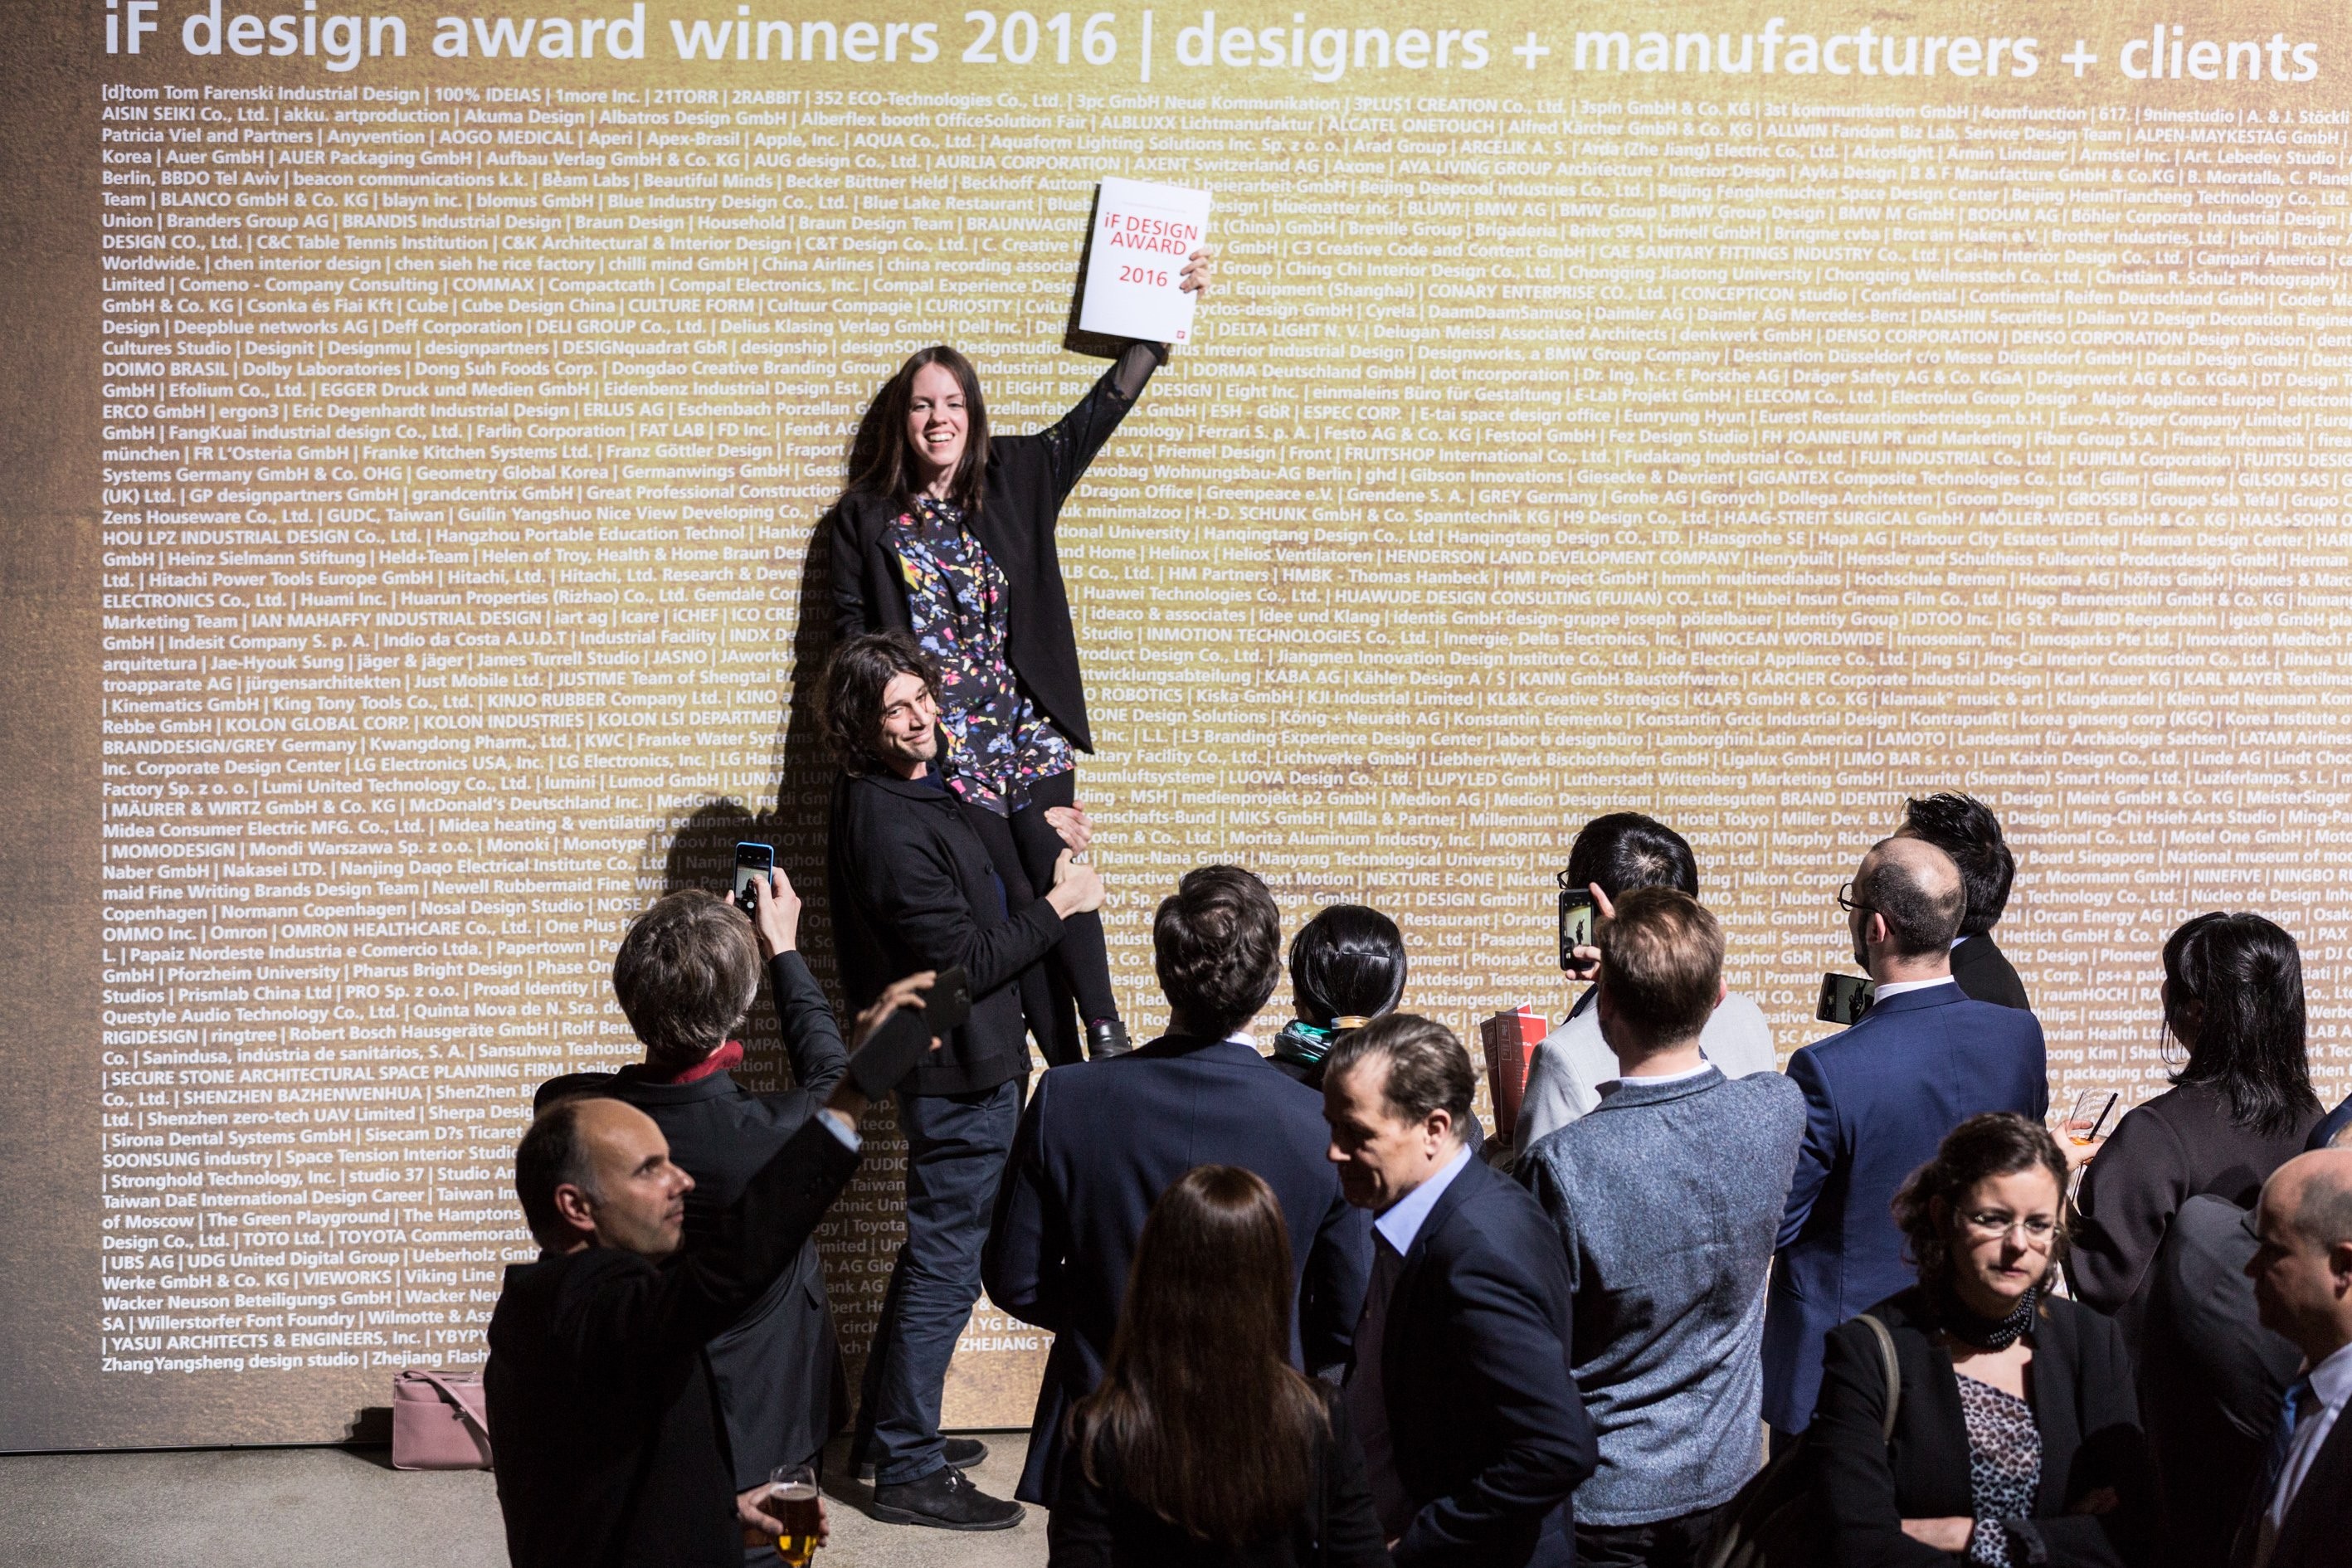 Sự kiện: Giải thưởng thiết kế iF Design